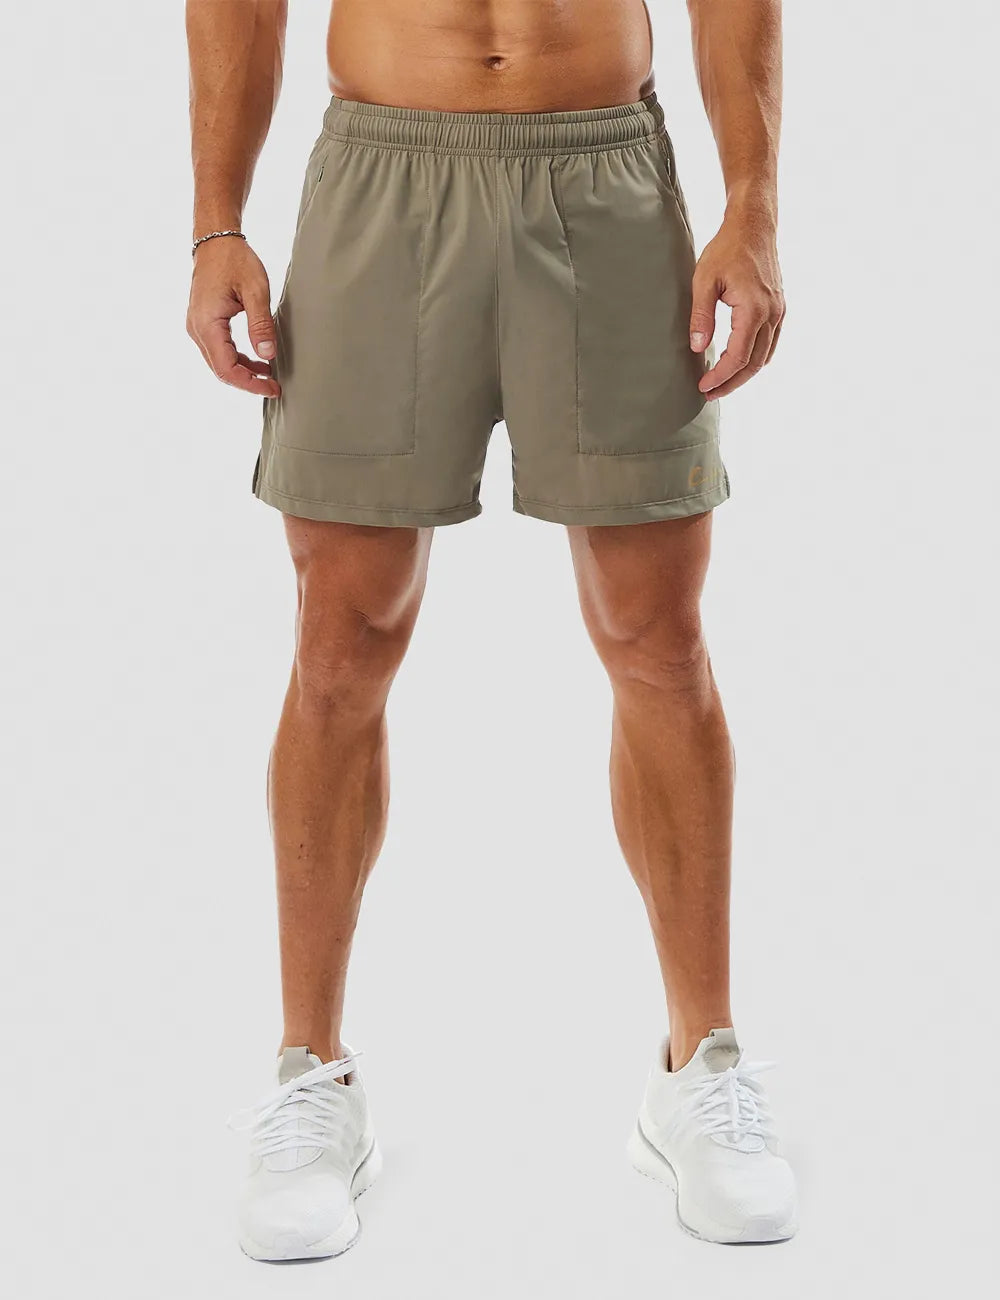 Solid Gym Shorts 5" - Grey